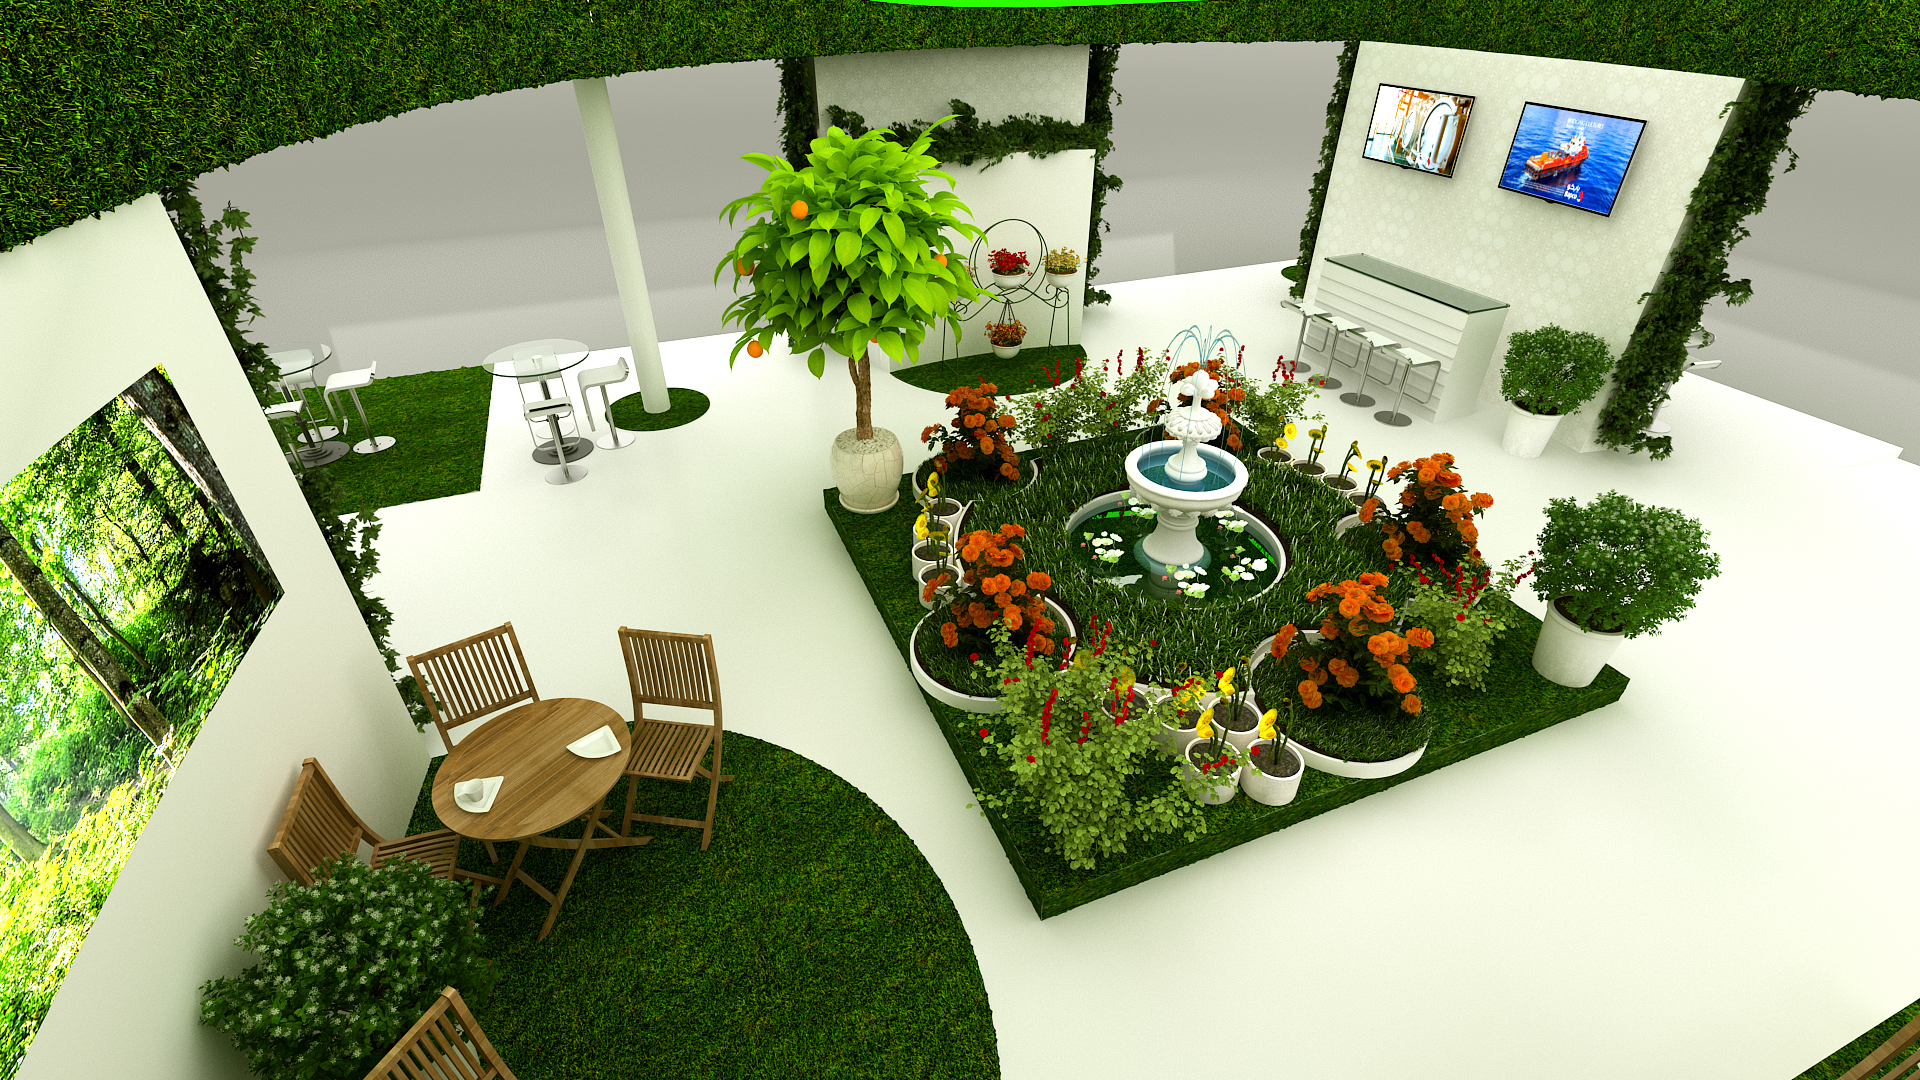 Conceptual Garden Show Design for - BAPCO-5